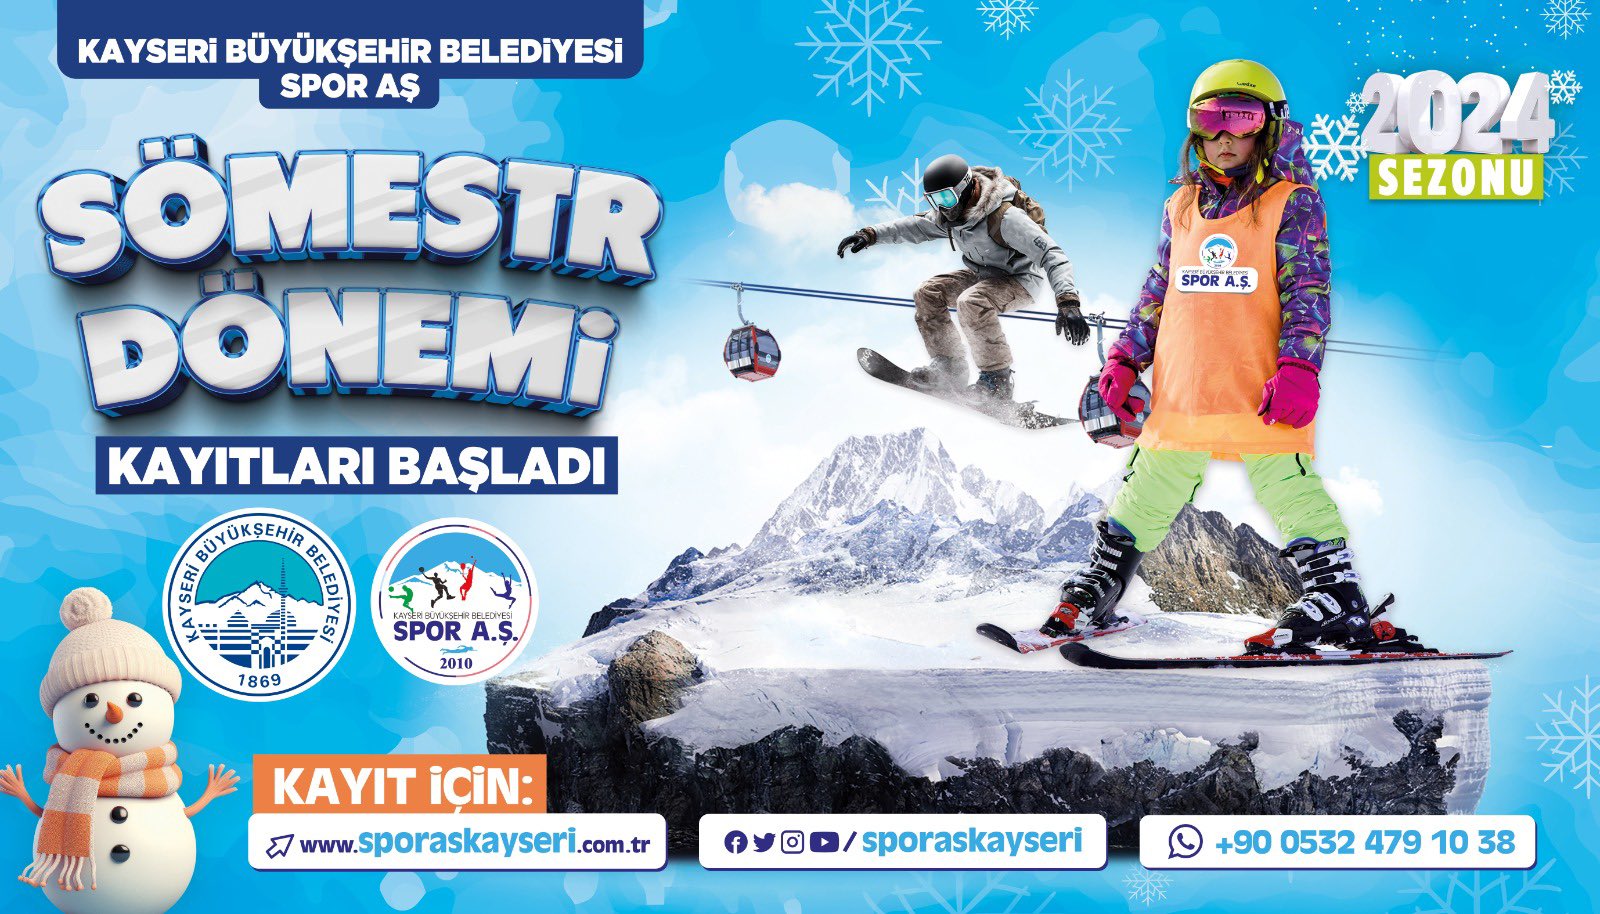 Büyükşehir Spor A.Ş.’den Kayak Okulu’nda “Sömestr” Jesti